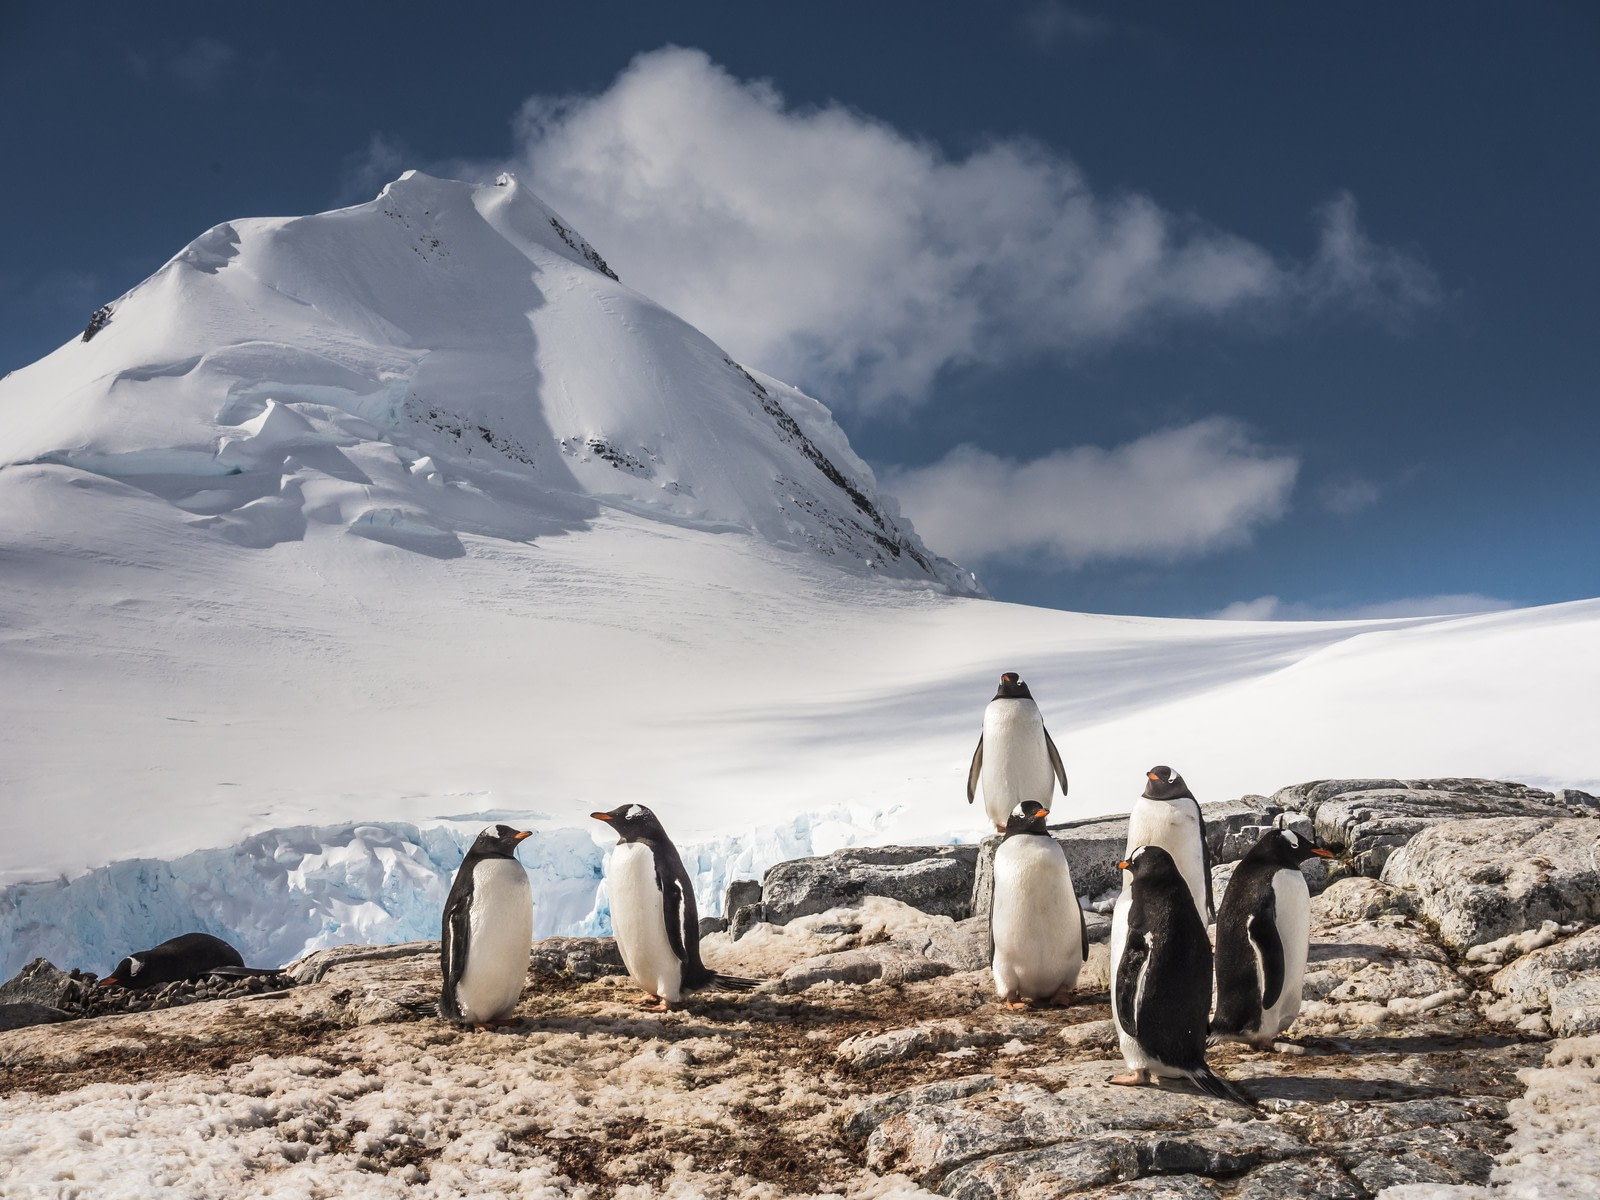 What exists in Antarctica?